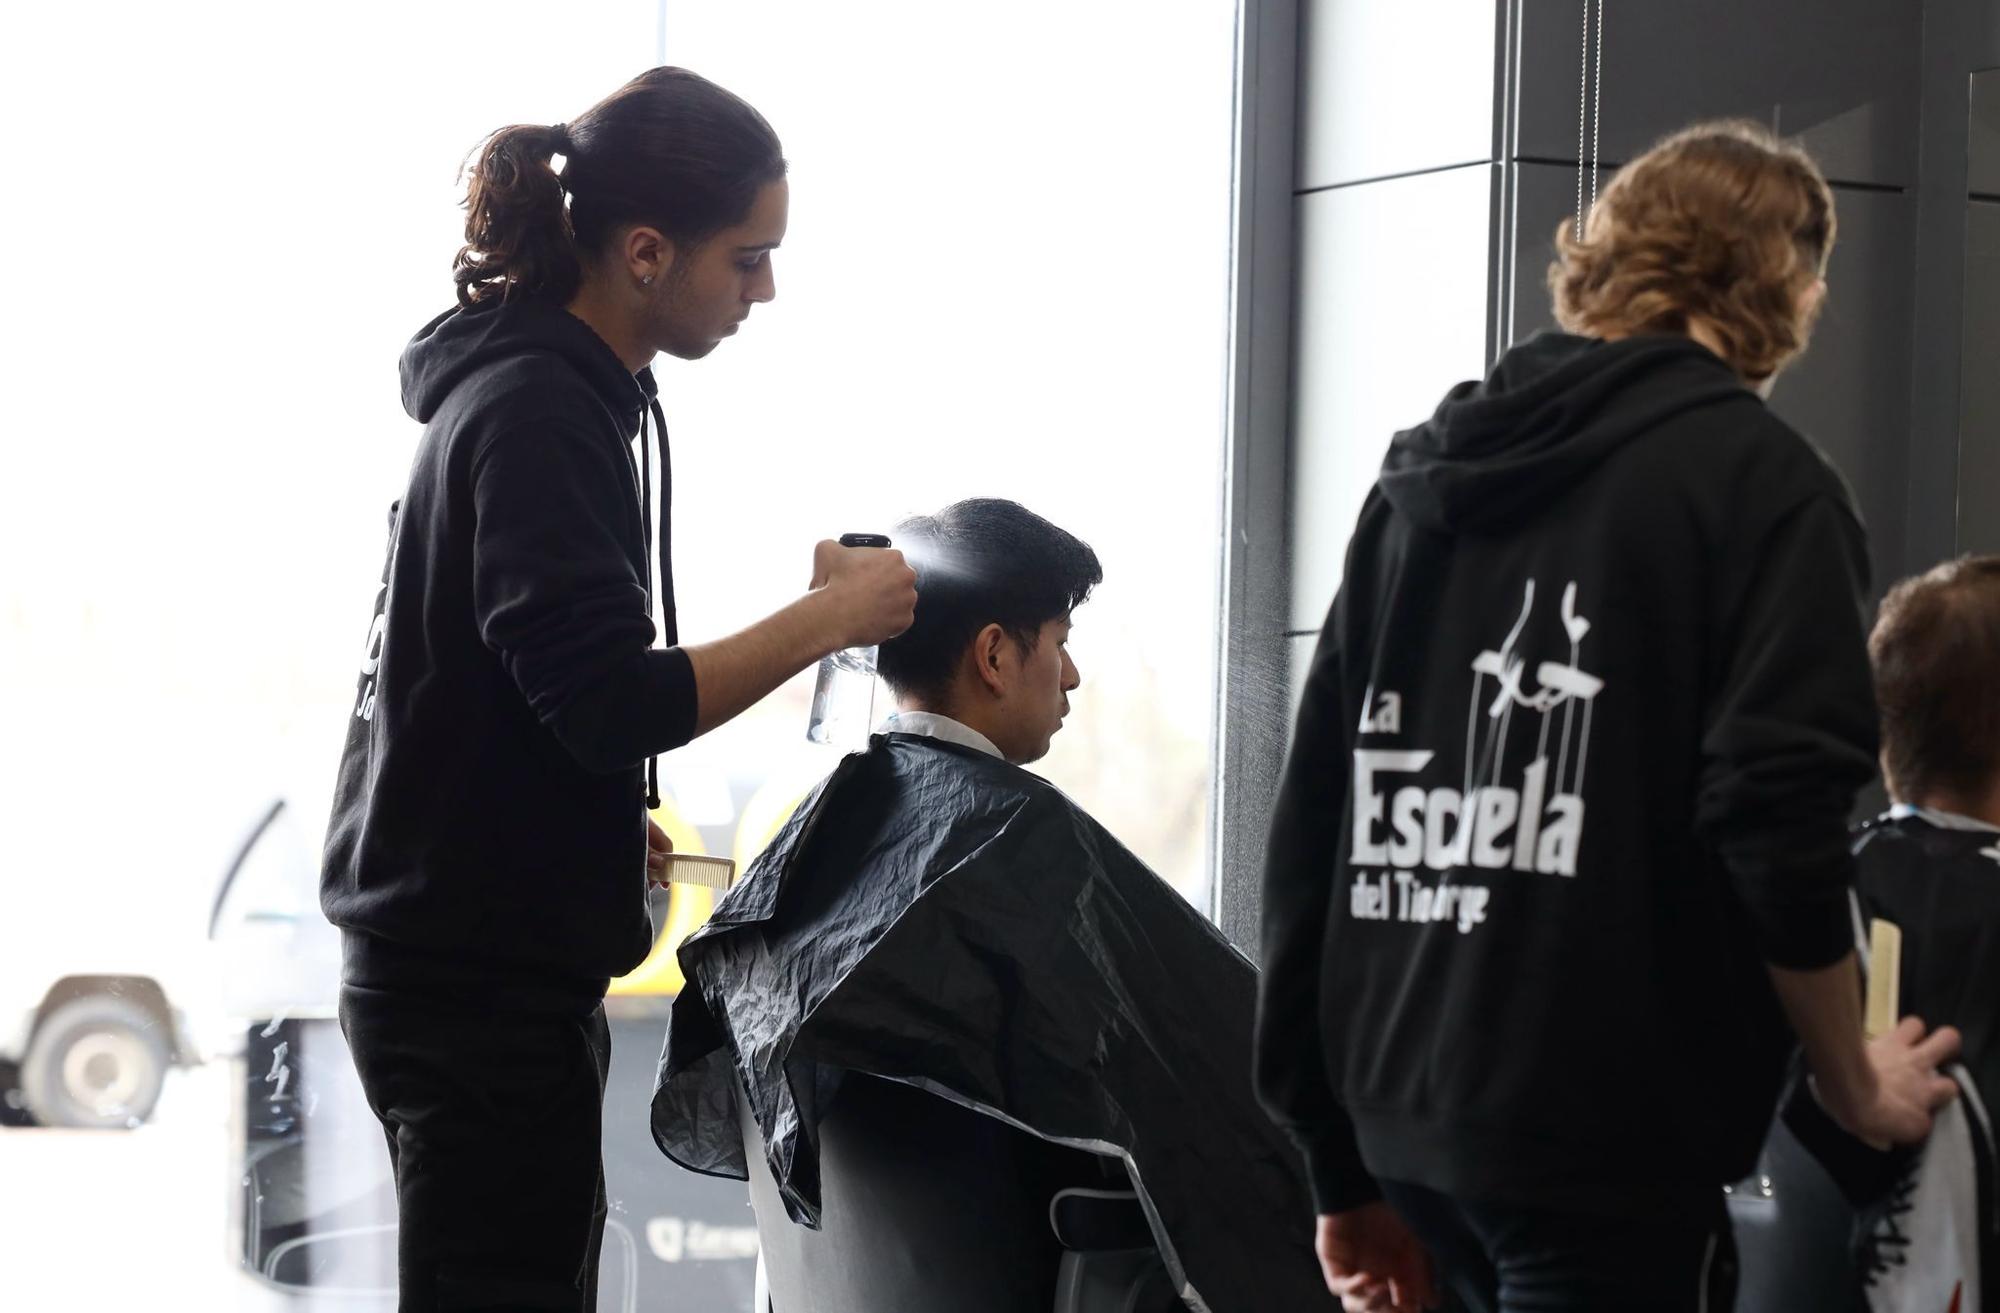 En imágenes | Personas sin hogar se cortan el pelo en la Academia Barbería Tío Jorge